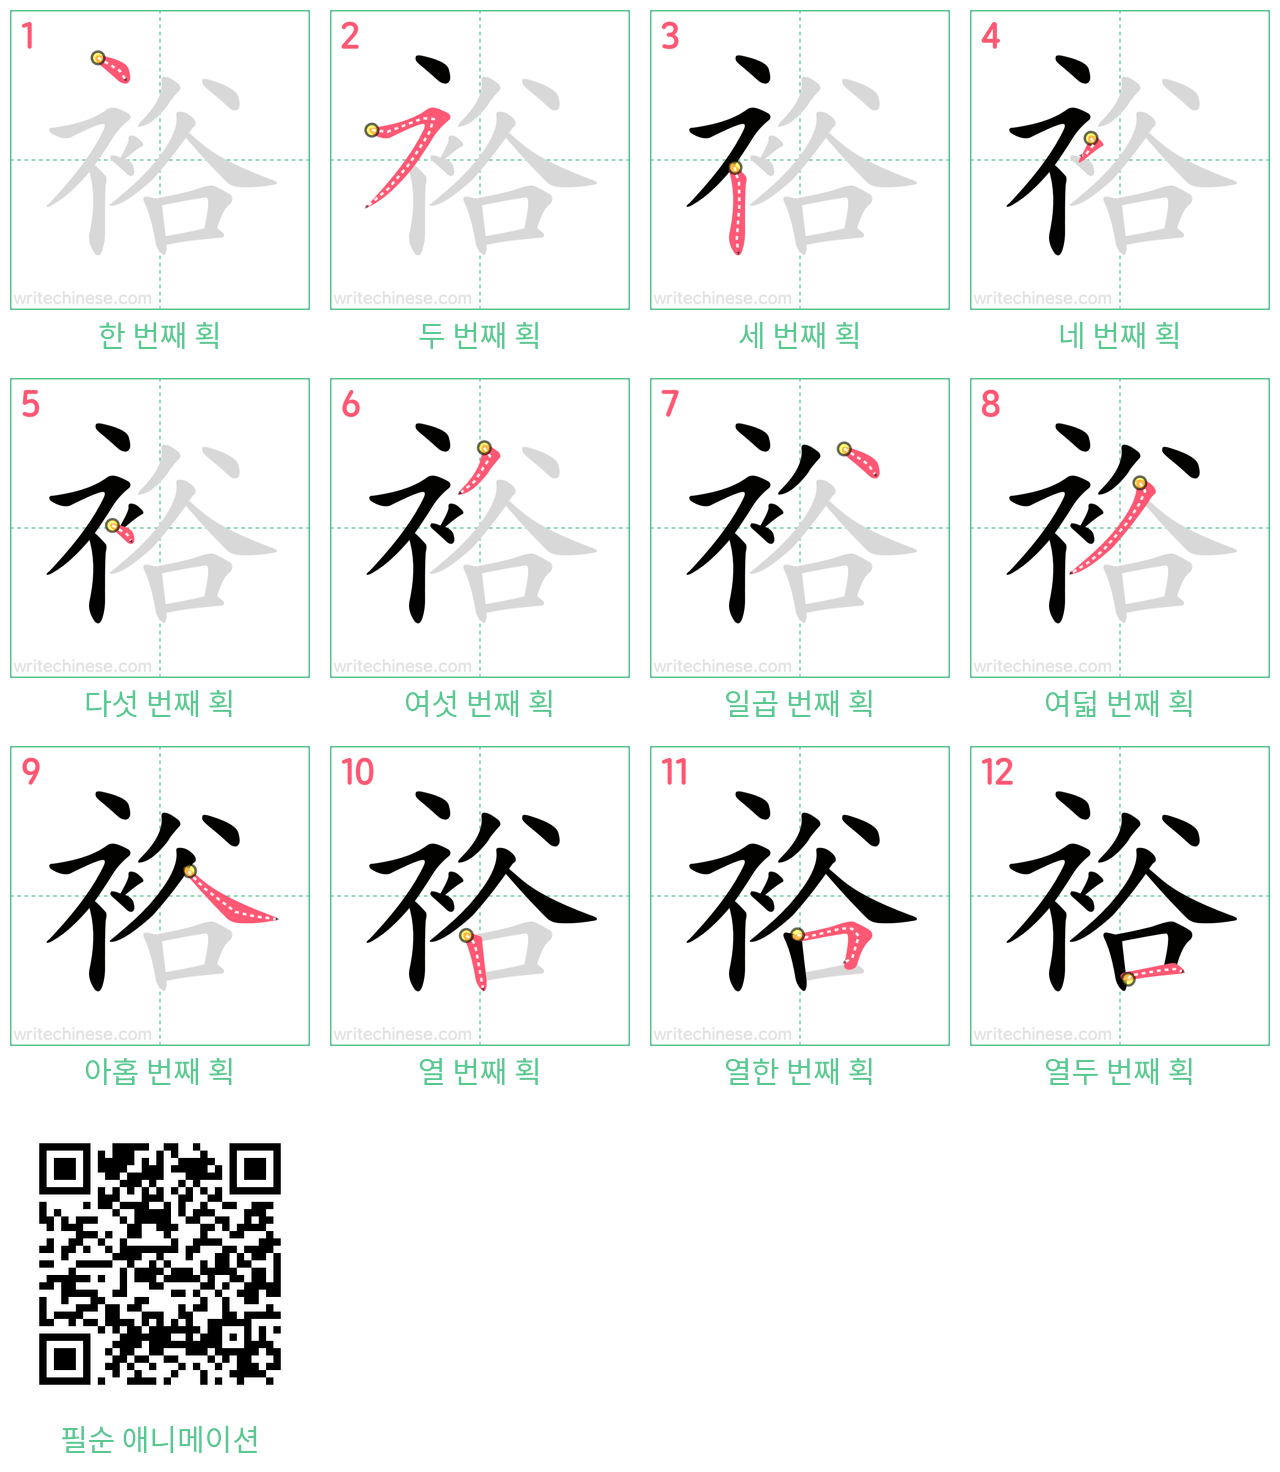 裕 step-by-step stroke order diagrams